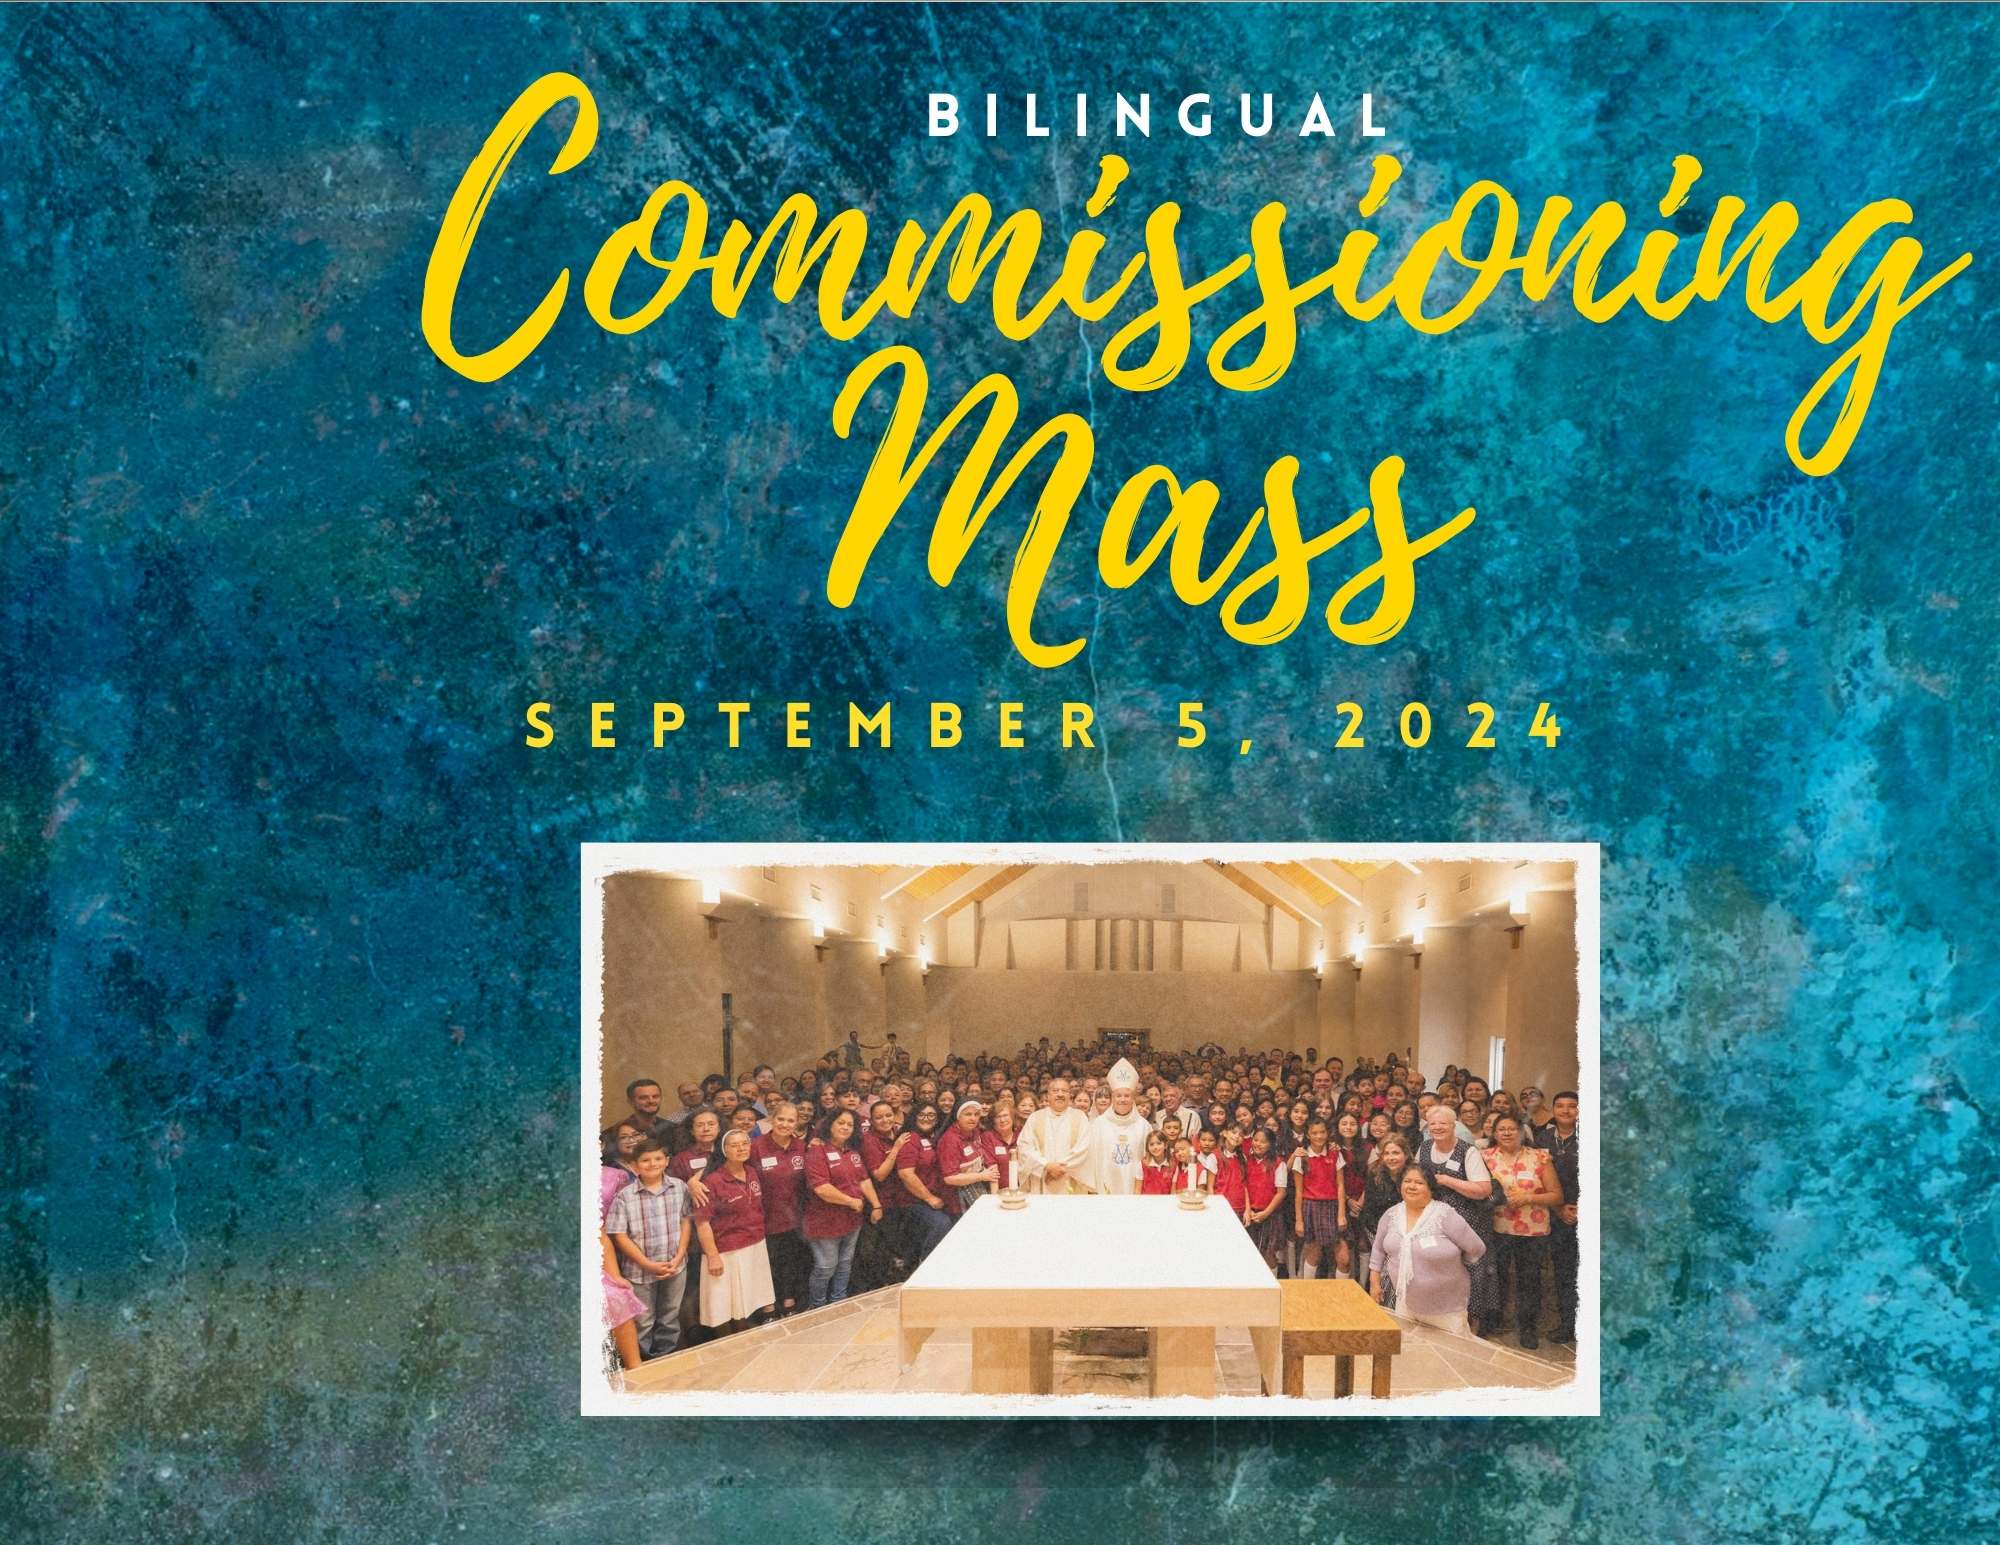 Bilingual Commissioning Mass